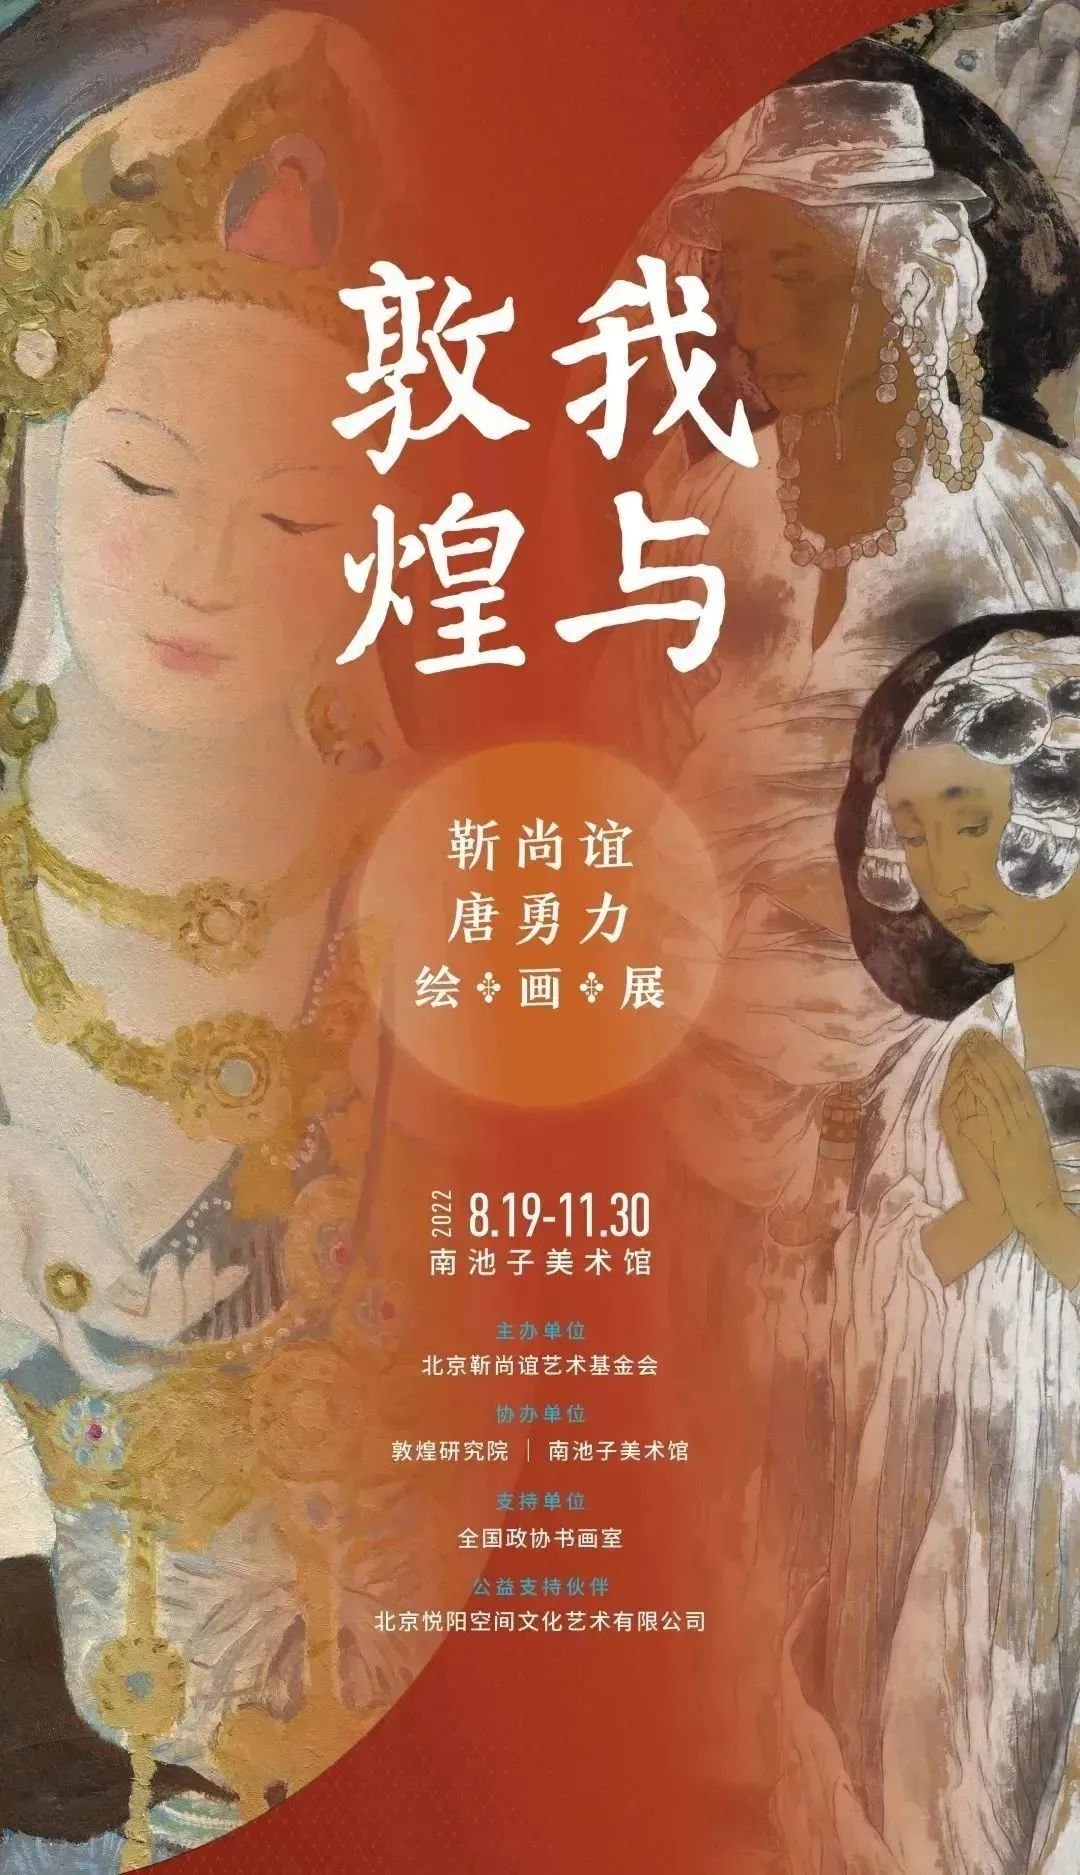 学术研讨会｜敦煌与20世纪中国美术——以“靳尚谊、唐勇力绘画展”为例